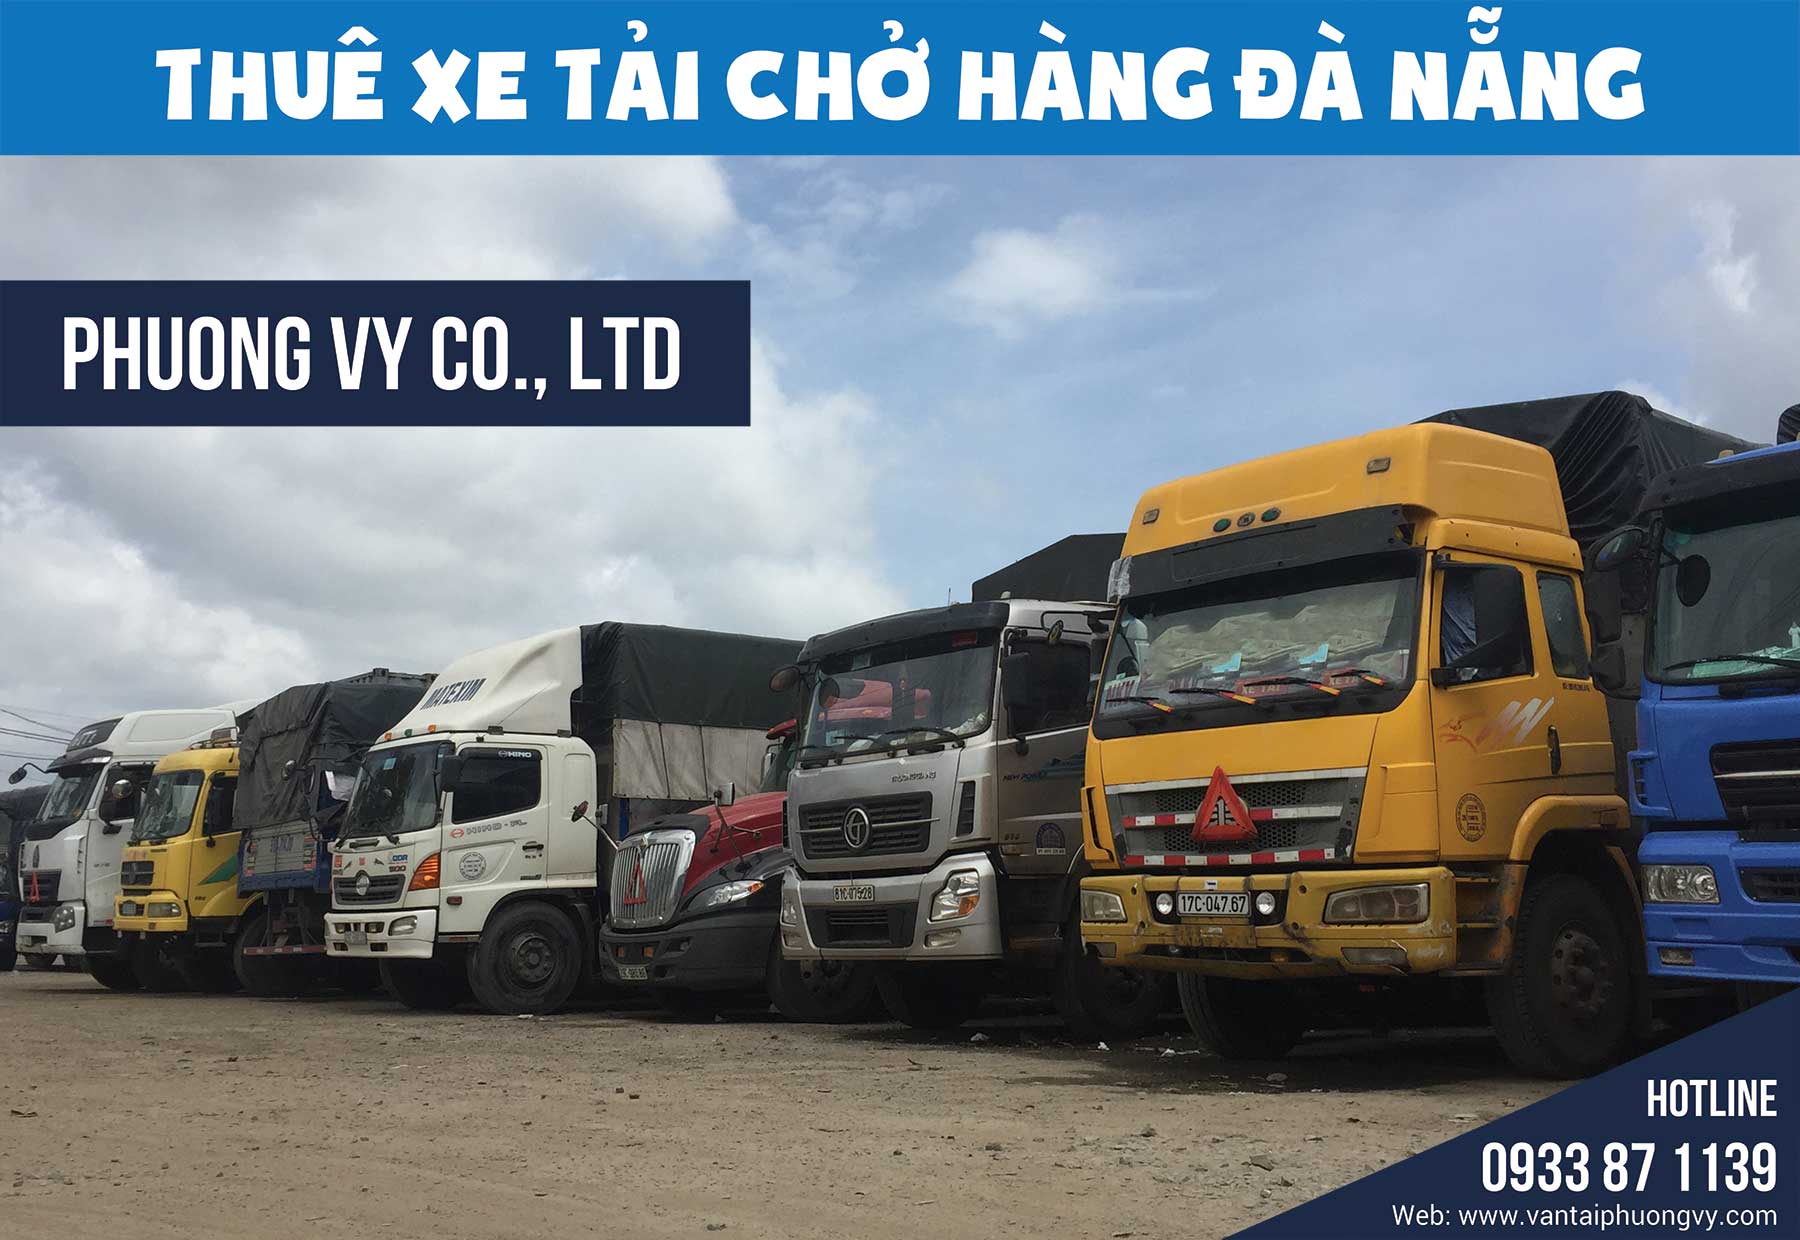 Cho thuê xe tải chở hàng tại Đà Nẵng | Vận Tải Phương Vy